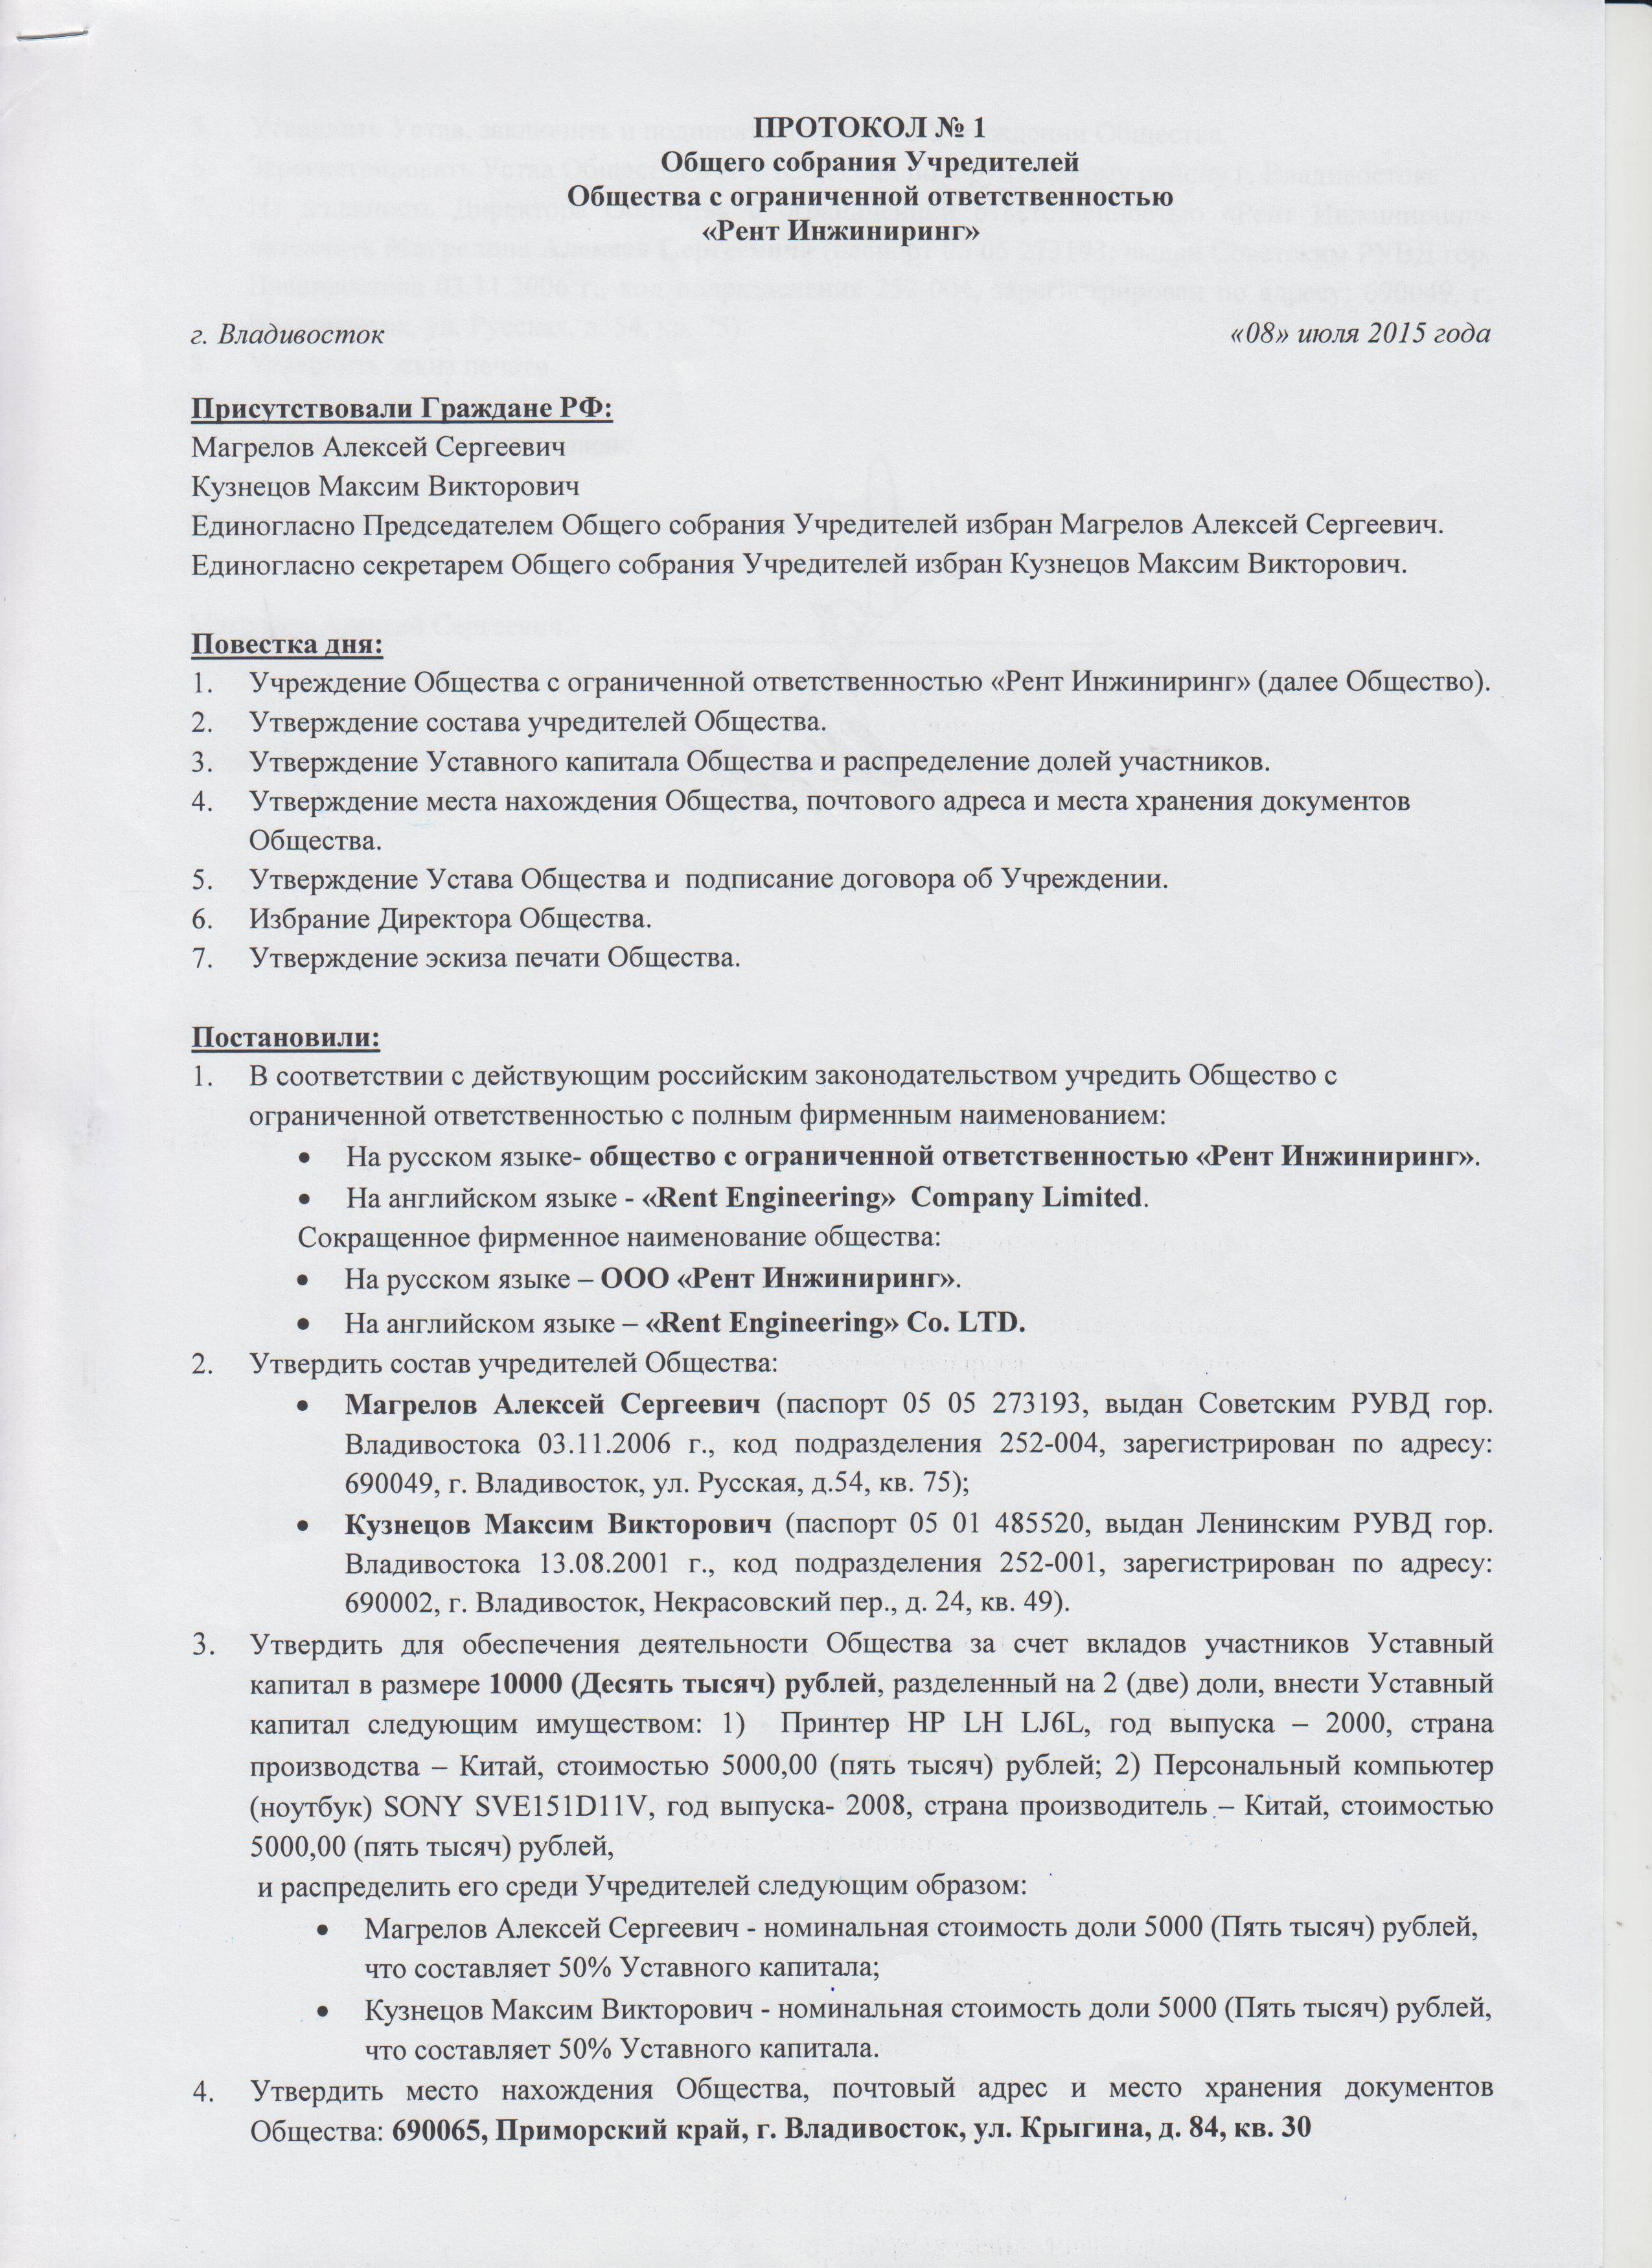 Выход учредителя из ооо: заявление, протокол собрания, распределение доли :: businessman.ru